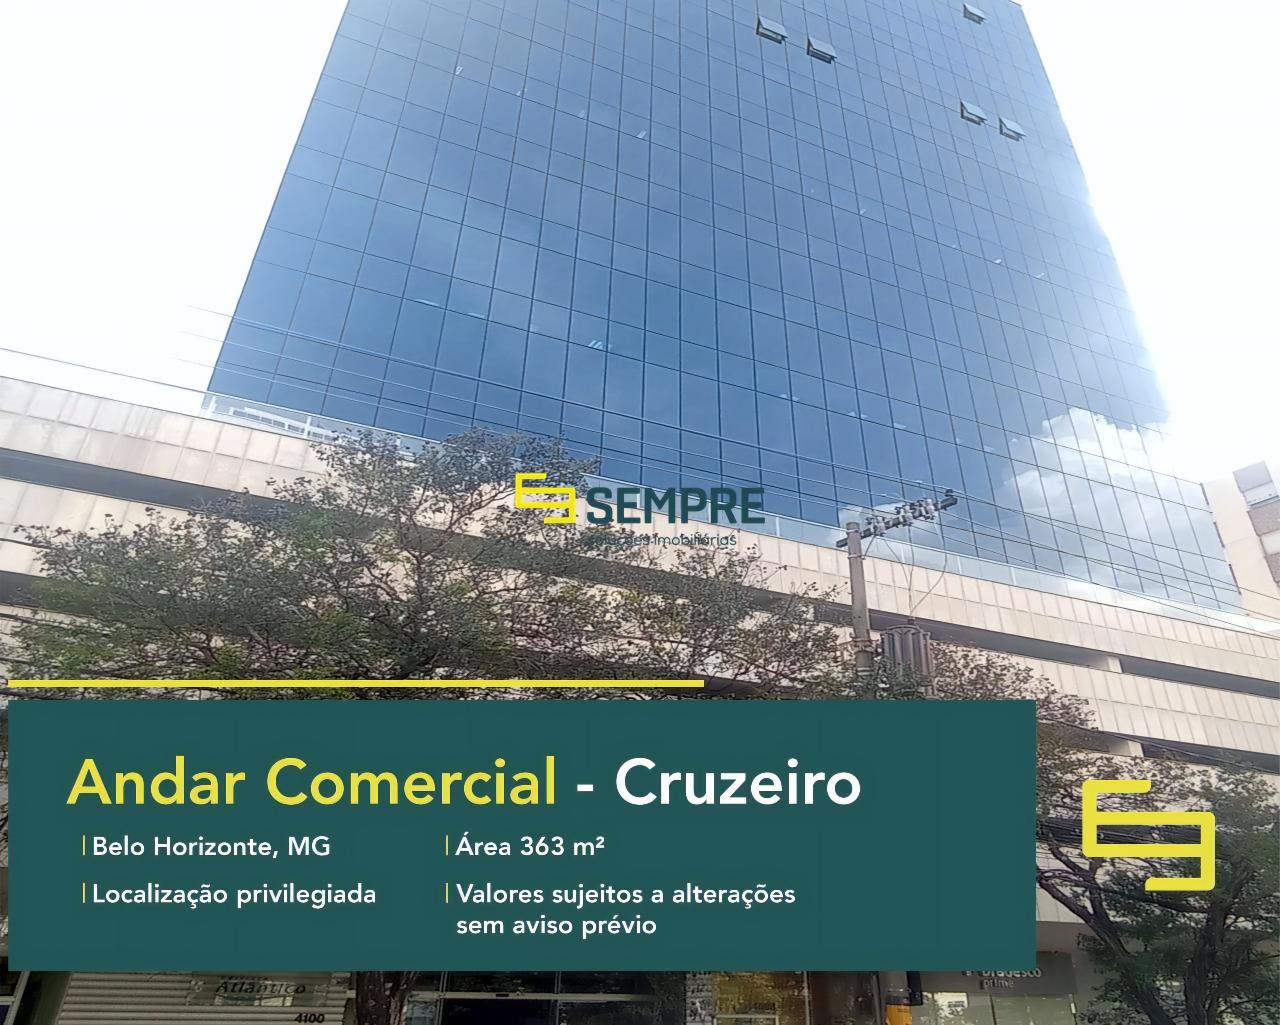 Andar comercial no Cruzeiro com vaga para alugar em Belo Horizonte, excelente localização. O ponto comercial conta com área de 363 m².